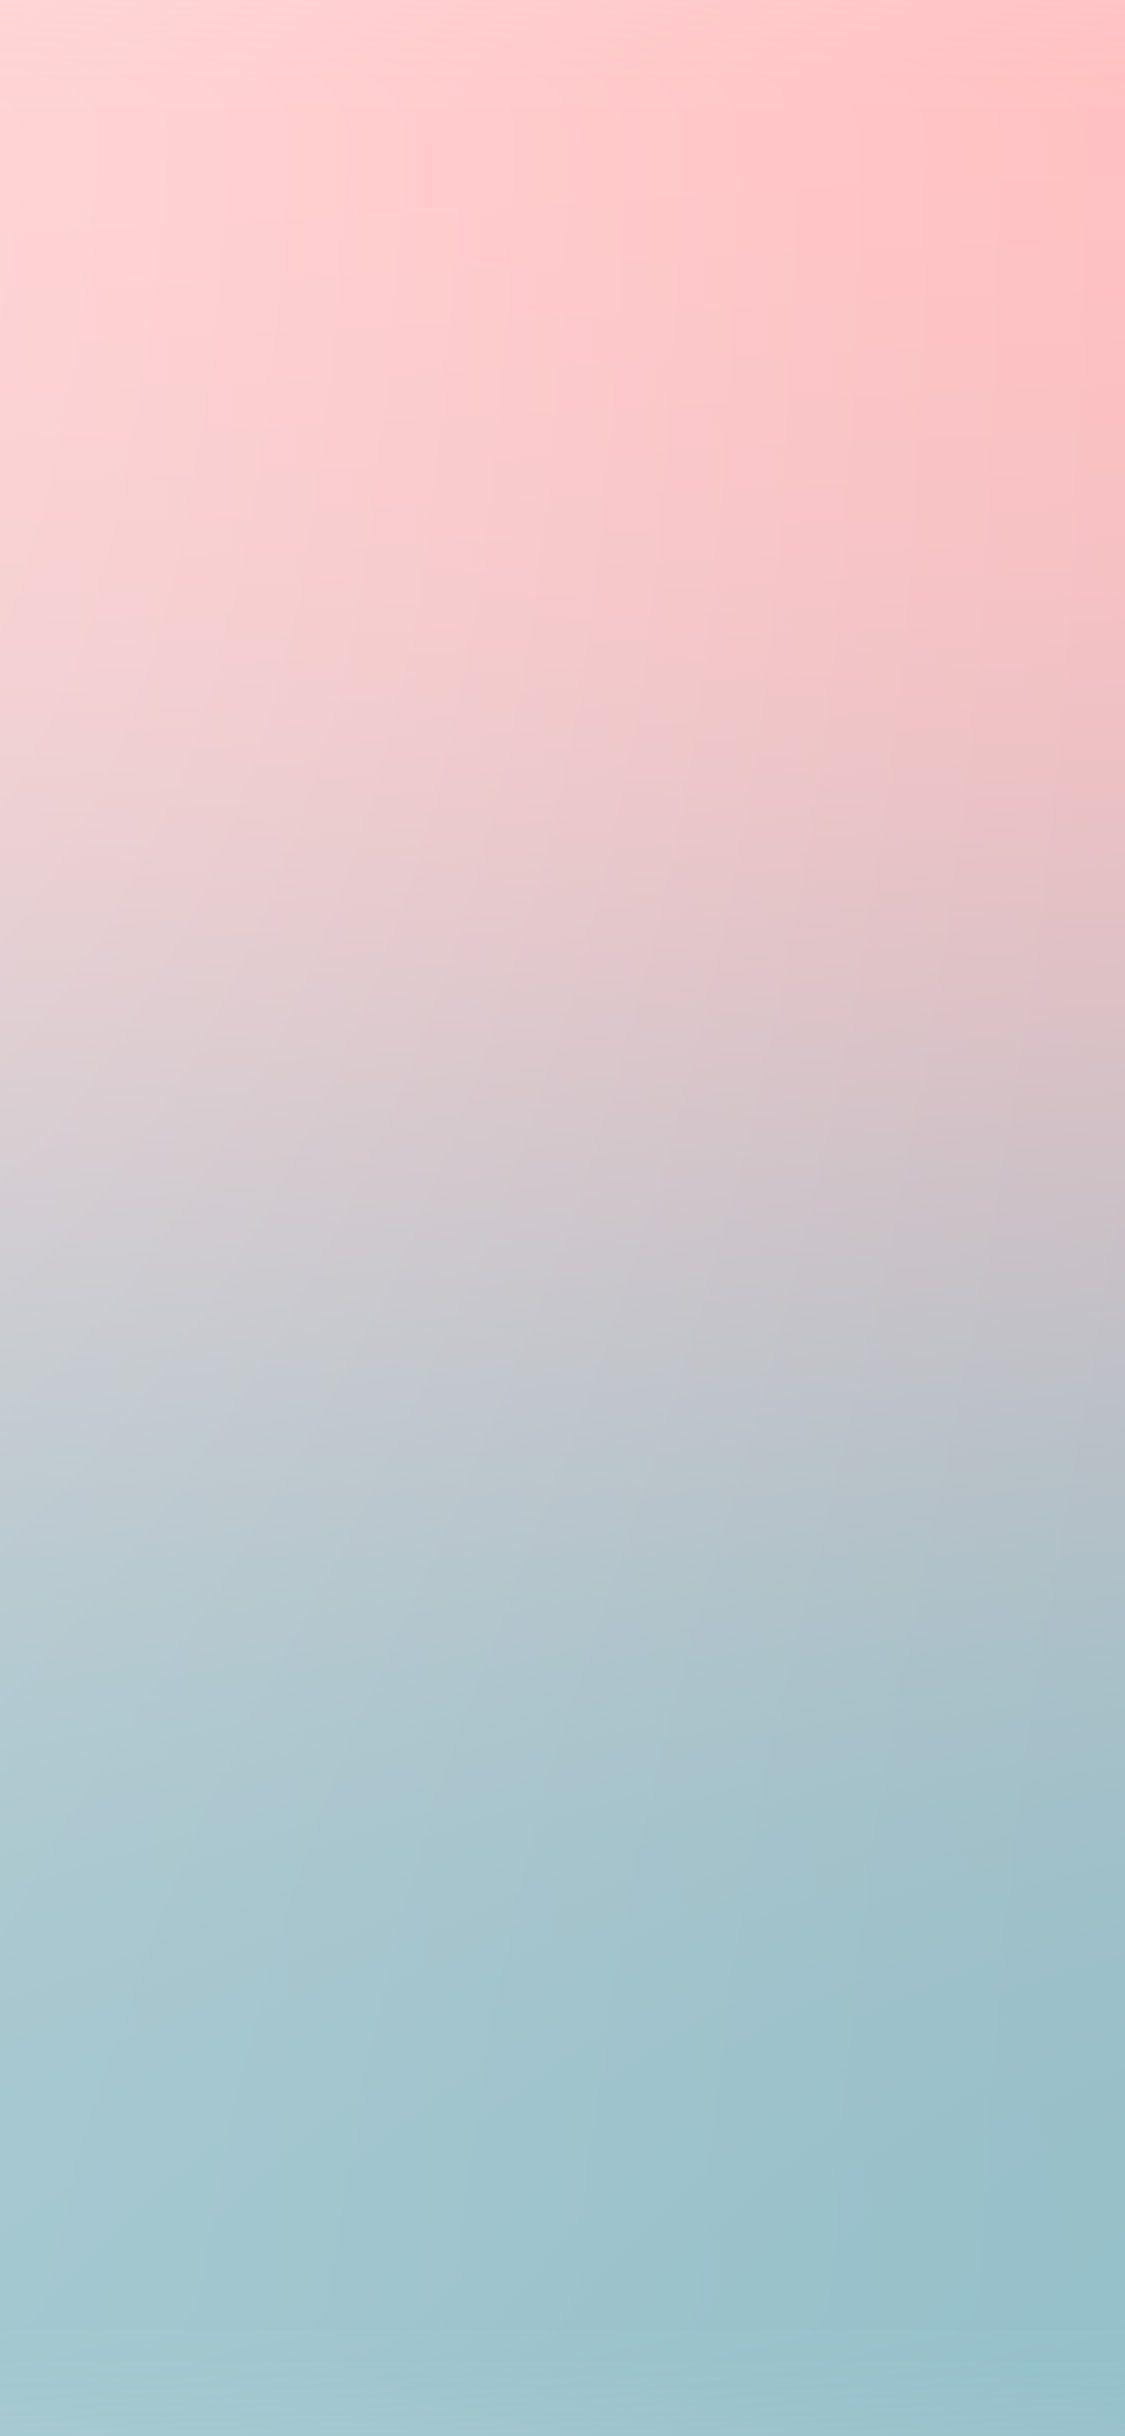 Những hình nền iPhone màu hồng xanh là sự lựa chọn hoàn hảo cho những ai yêu thích màu sắc và cá tính. Với rất nhiều lựa chọn đa dạng và đẹp mắt, các hình nền này sẽ chắc chắn khiến bạn cảm thấy đầy hứng khởi. Let\'s try it out!